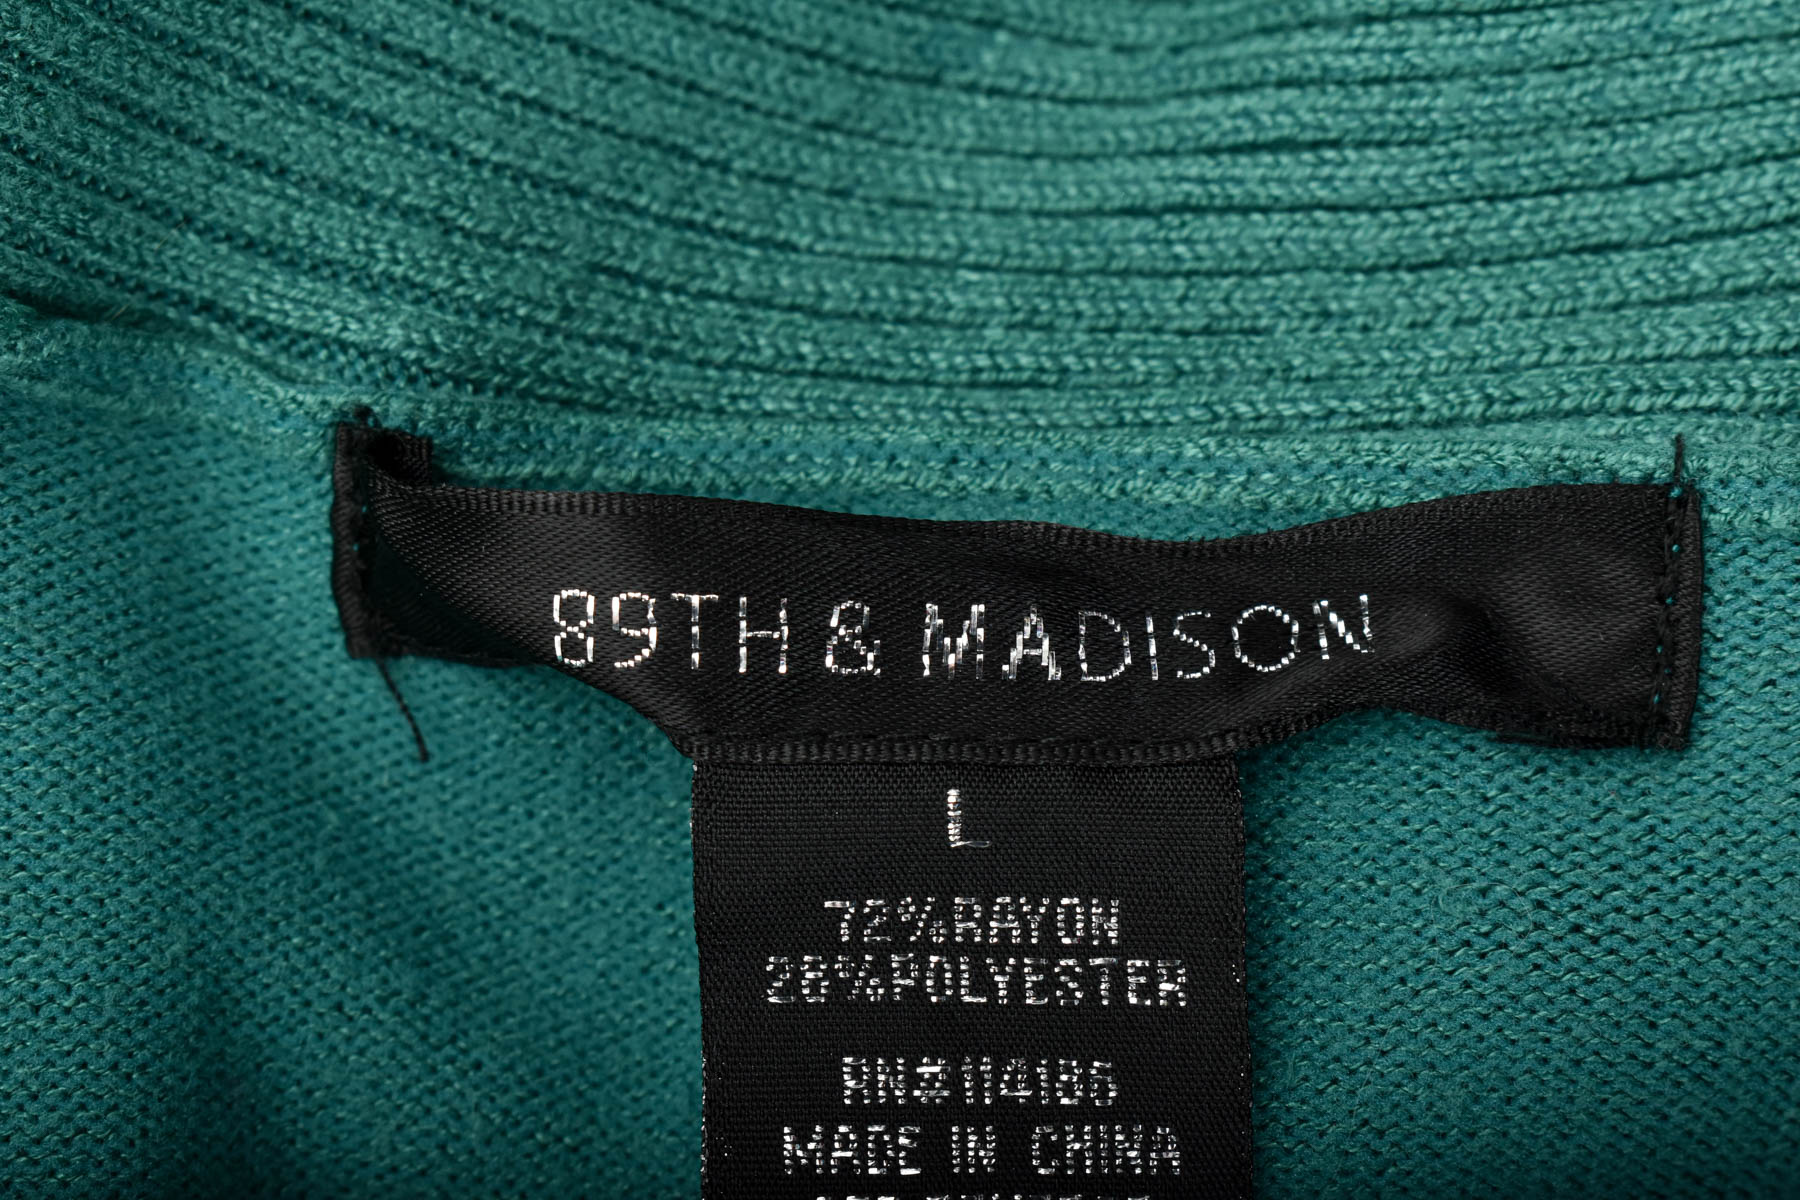 Cardigan / Jachetă de damă - 89th & MADISON - 2